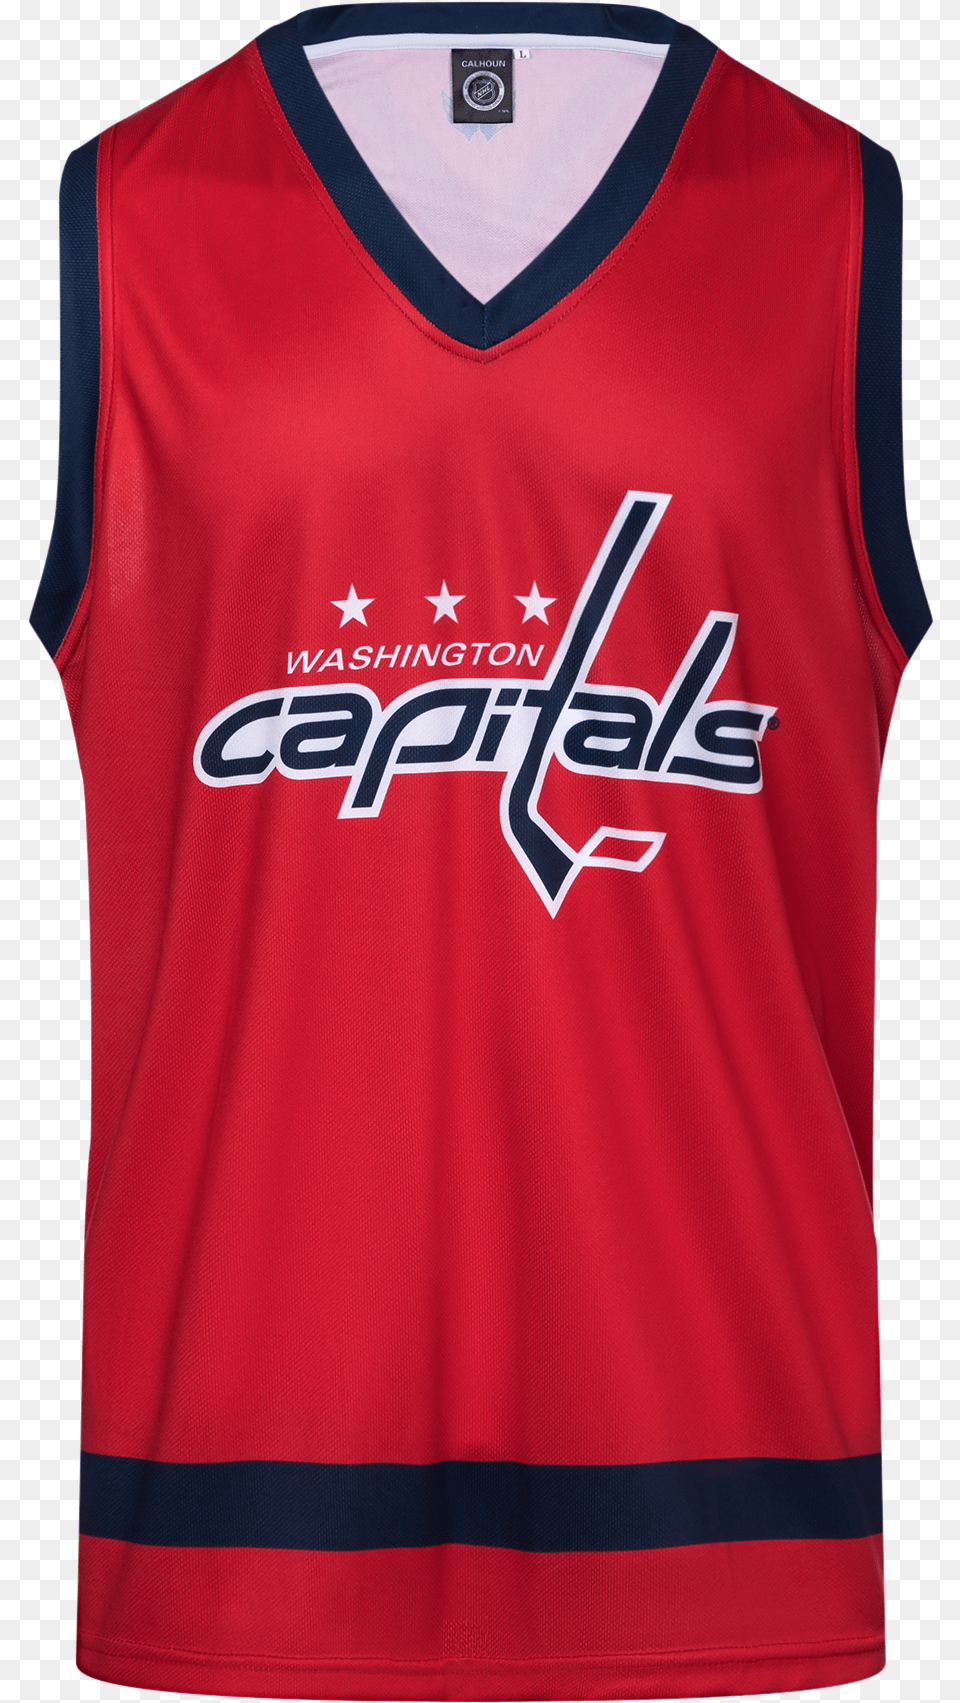 Washington Capitals Hockey Tank, Clothing, Shirt, Jersey, Person Png